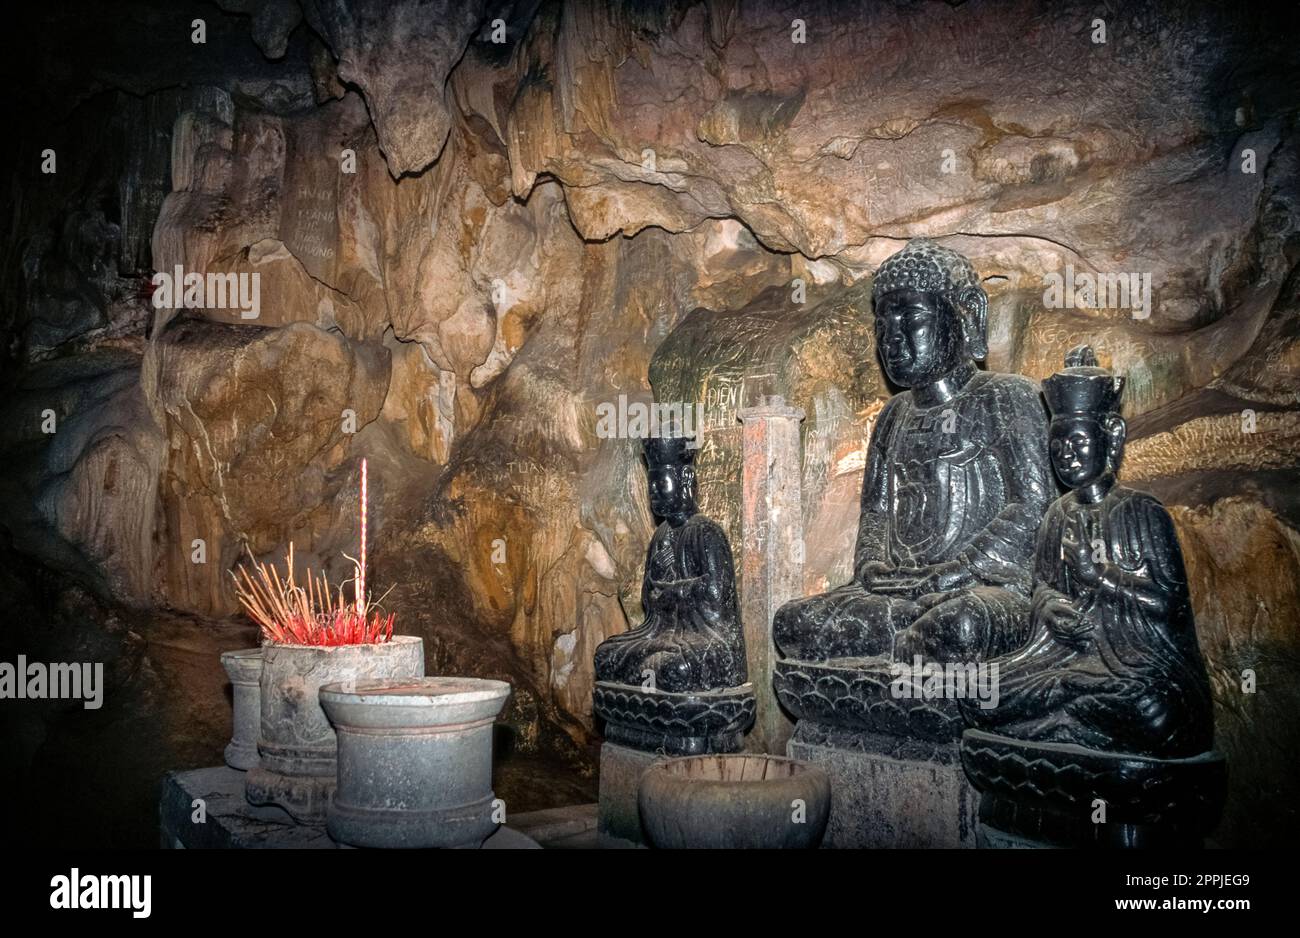 Gescannte Dia eines historischen Farbfotos in einer Höhle mit Buddha-Figuren in einem Tempel in Nordvietnam Stockfoto